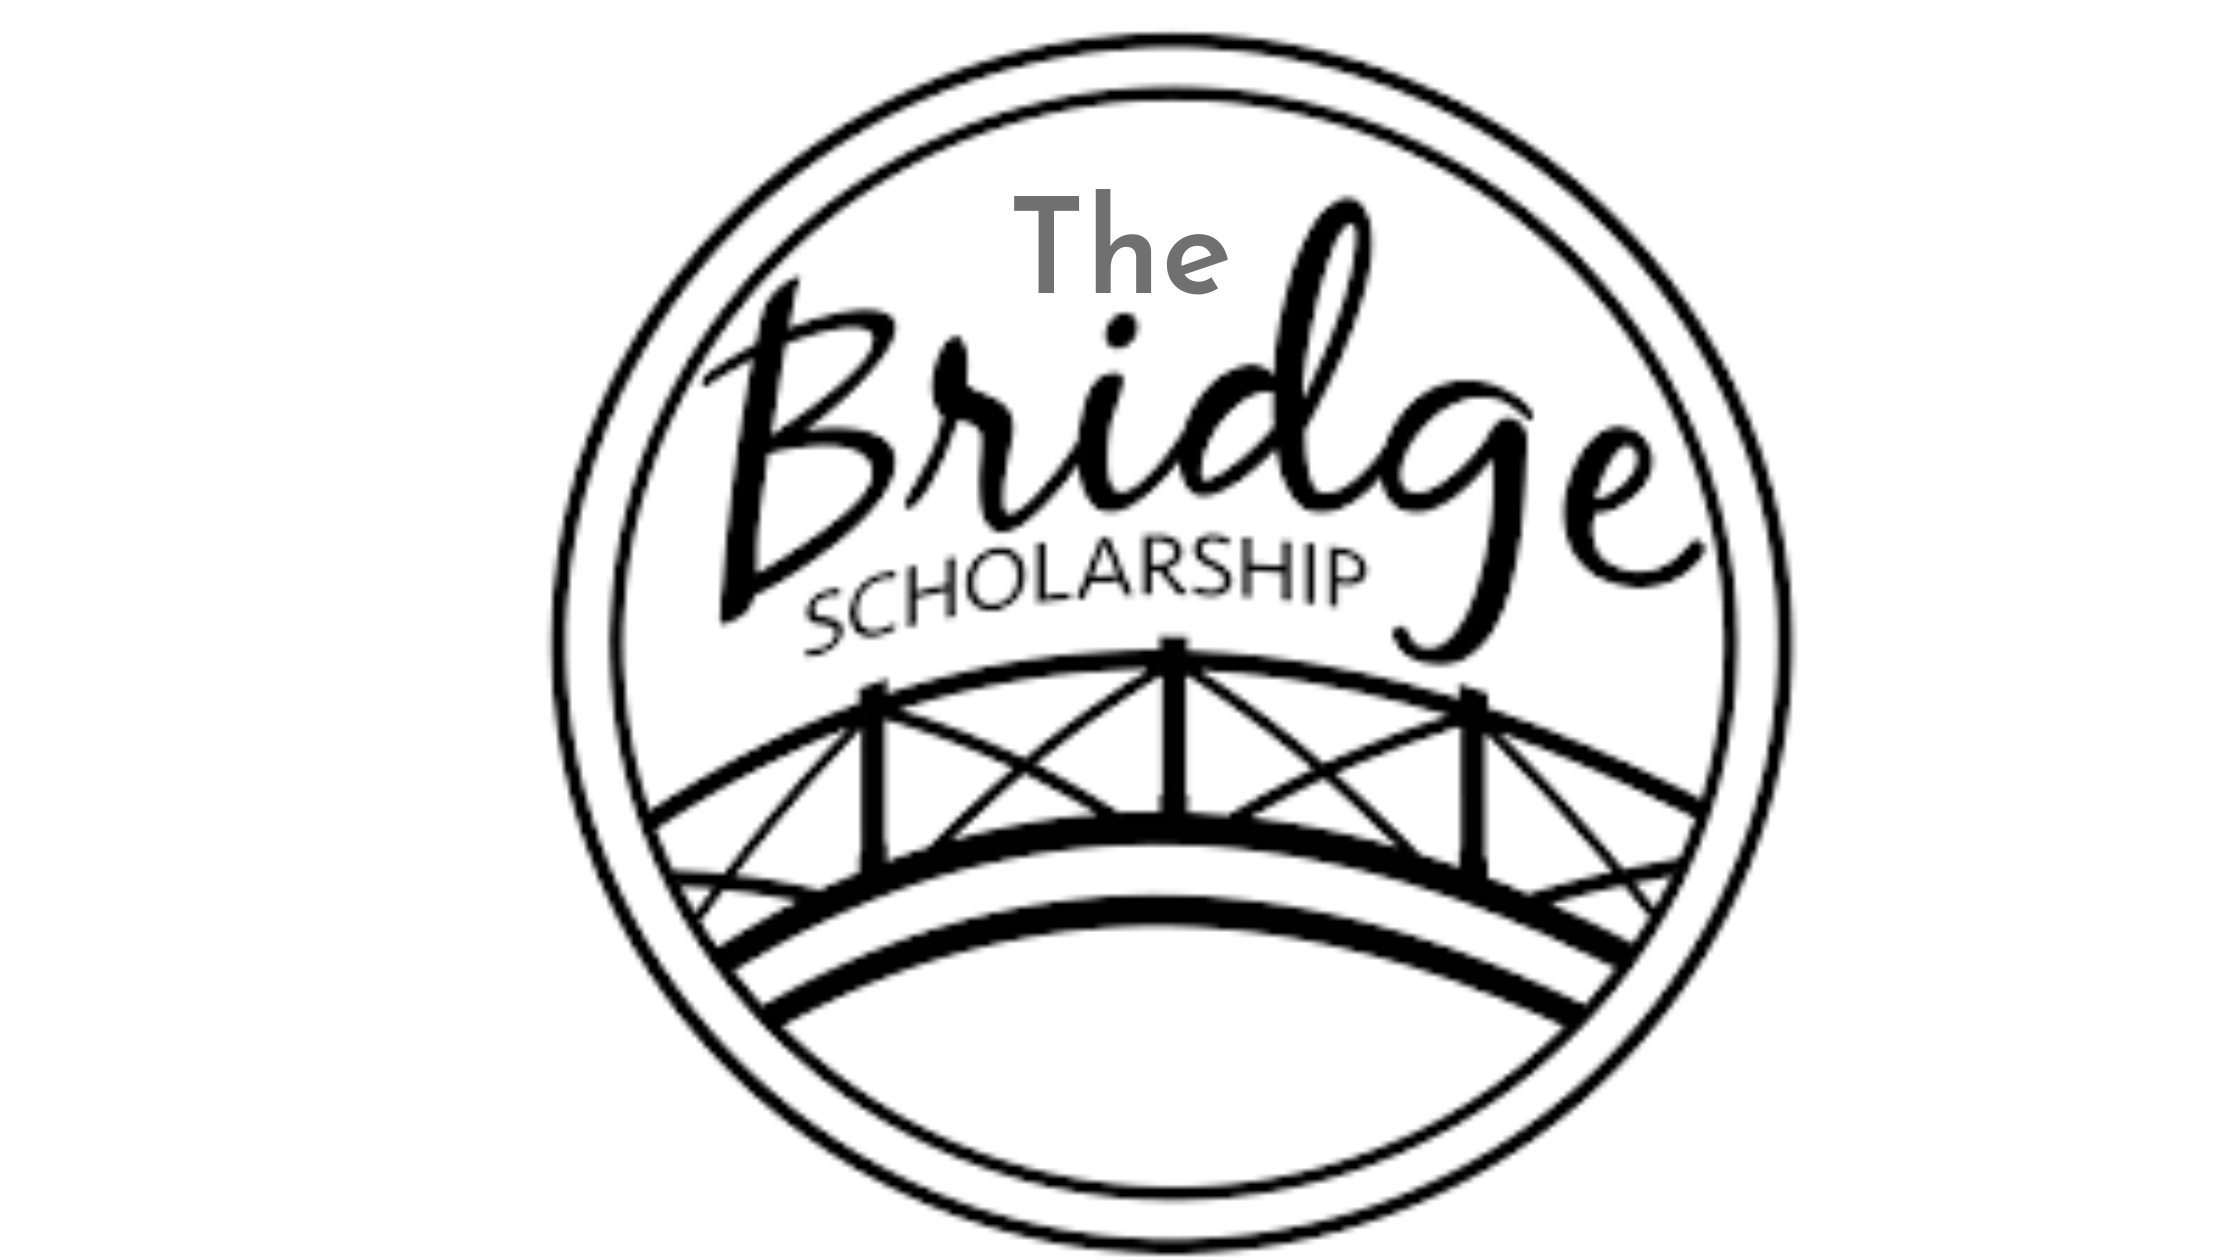 The Bridge Scholarship 2022 - How to Apply.